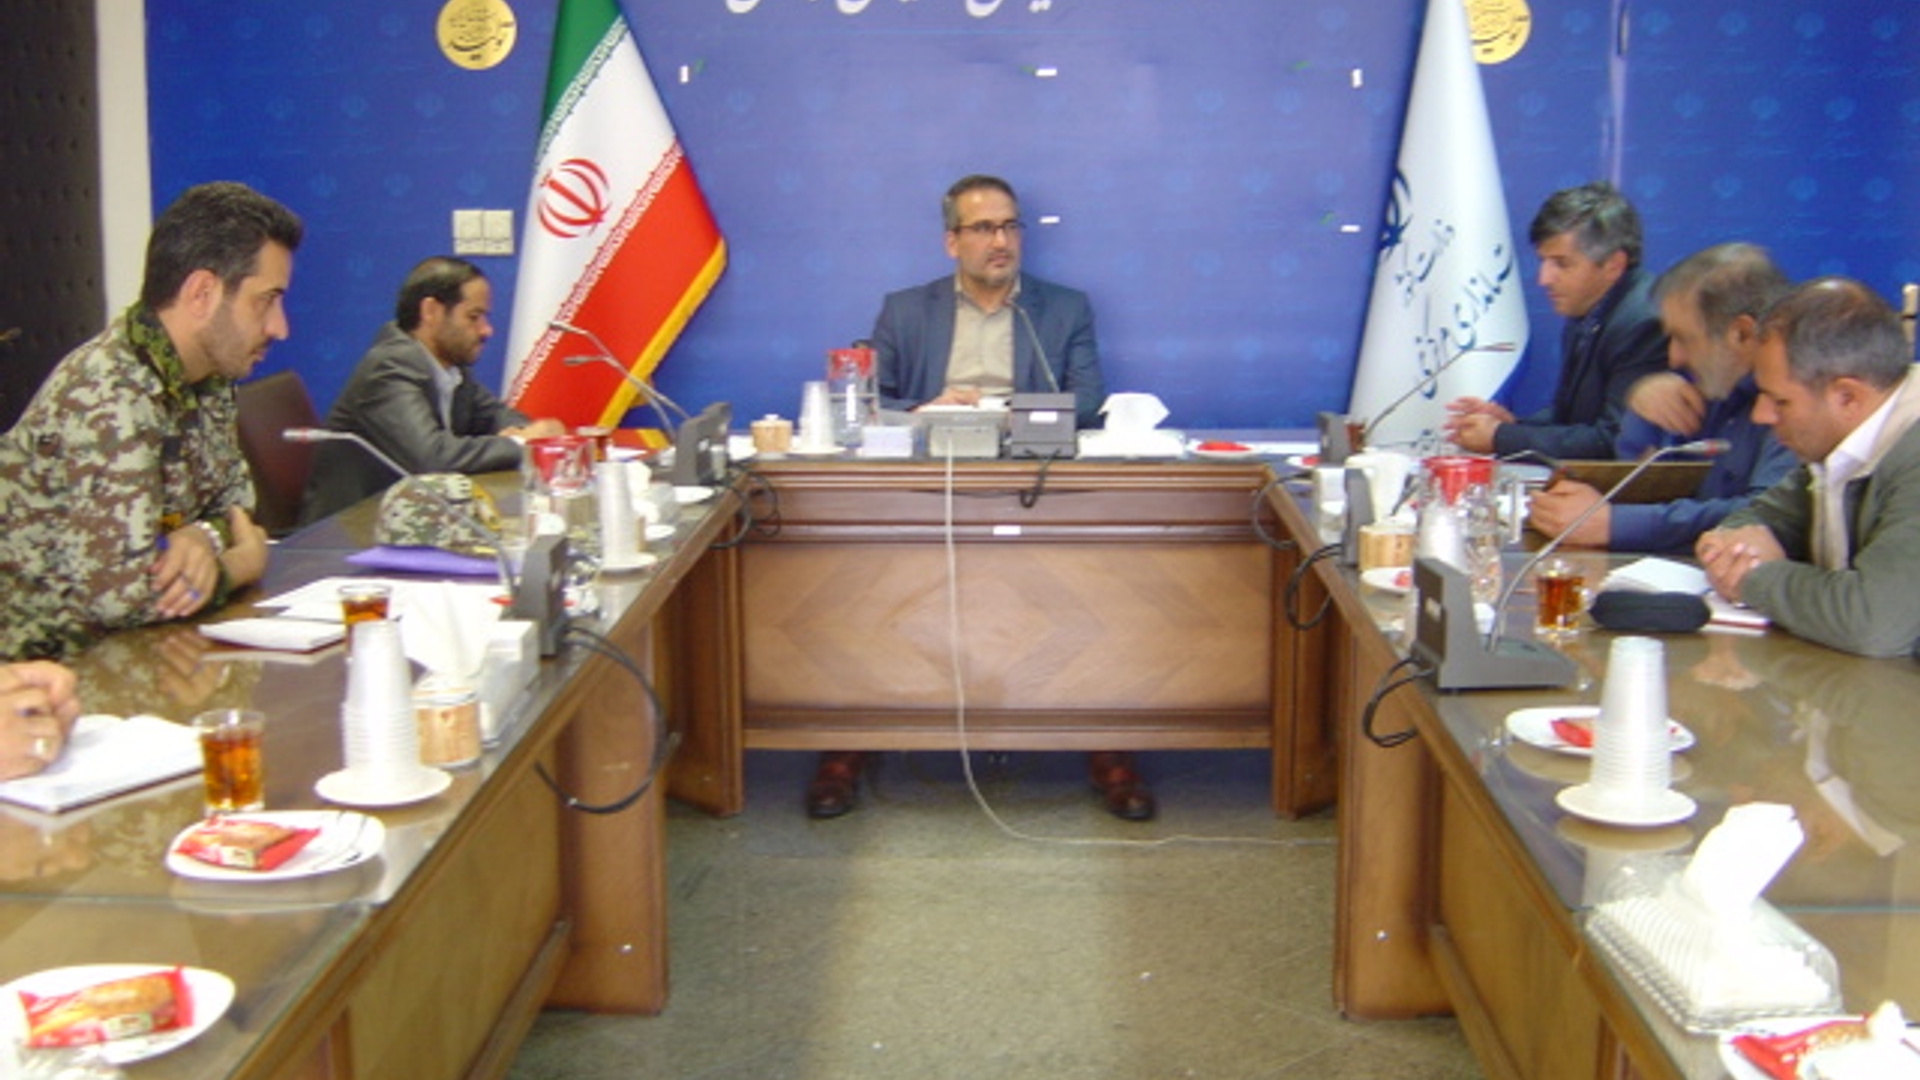 جلسه کمیته امنیتی پرنده های بدون سرنشین ساعت 13-00 مورخ 1401-9-23 به ریاست آقای رحیمی تبار مدیر کل امنیتی و انتظامی برگزار گردید.